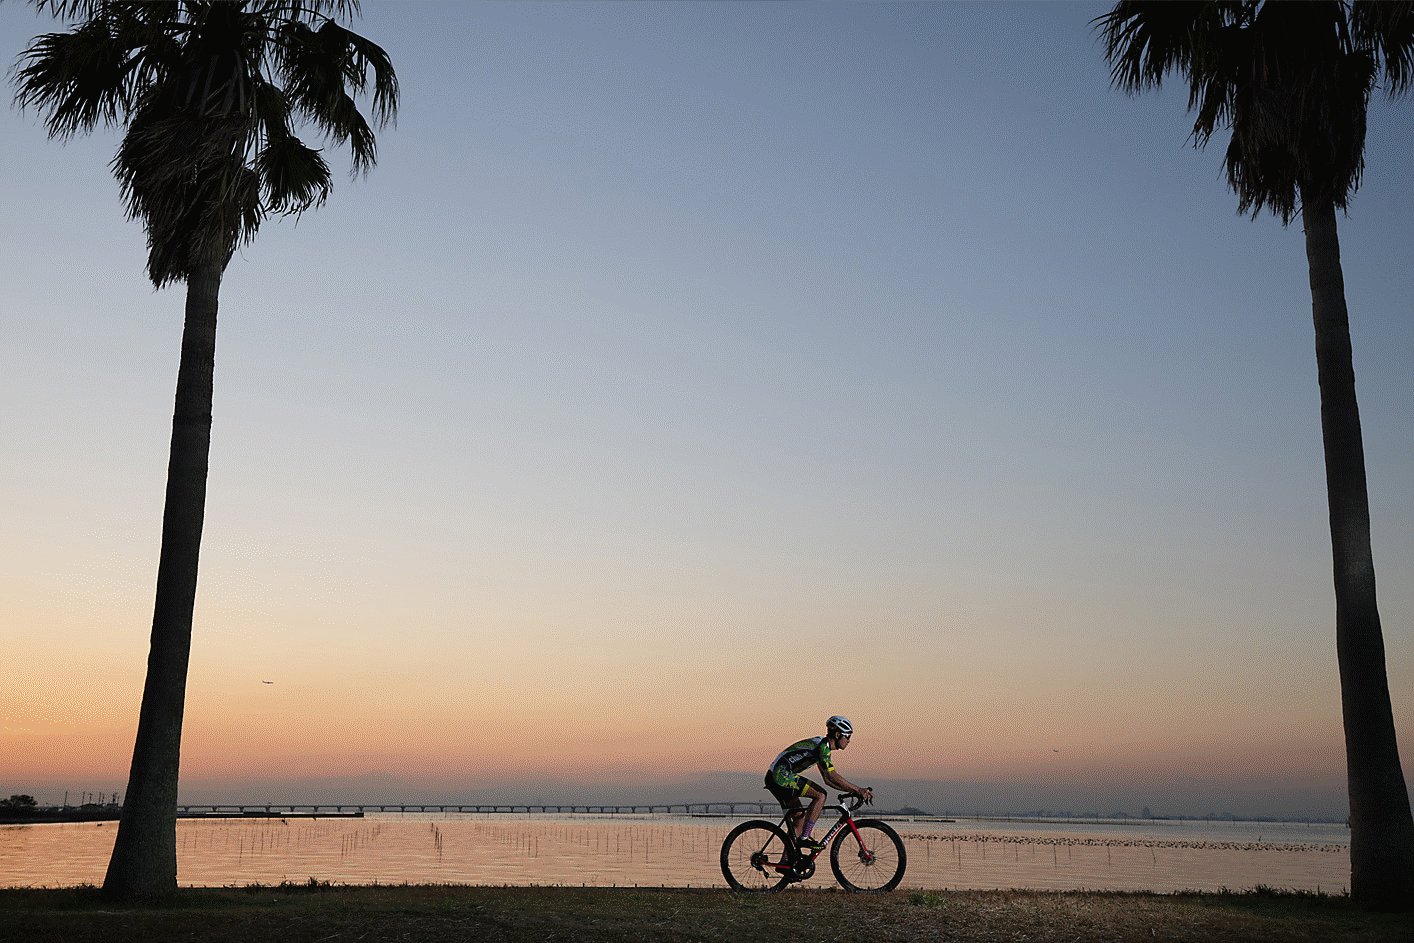 Cycle rider at sunset